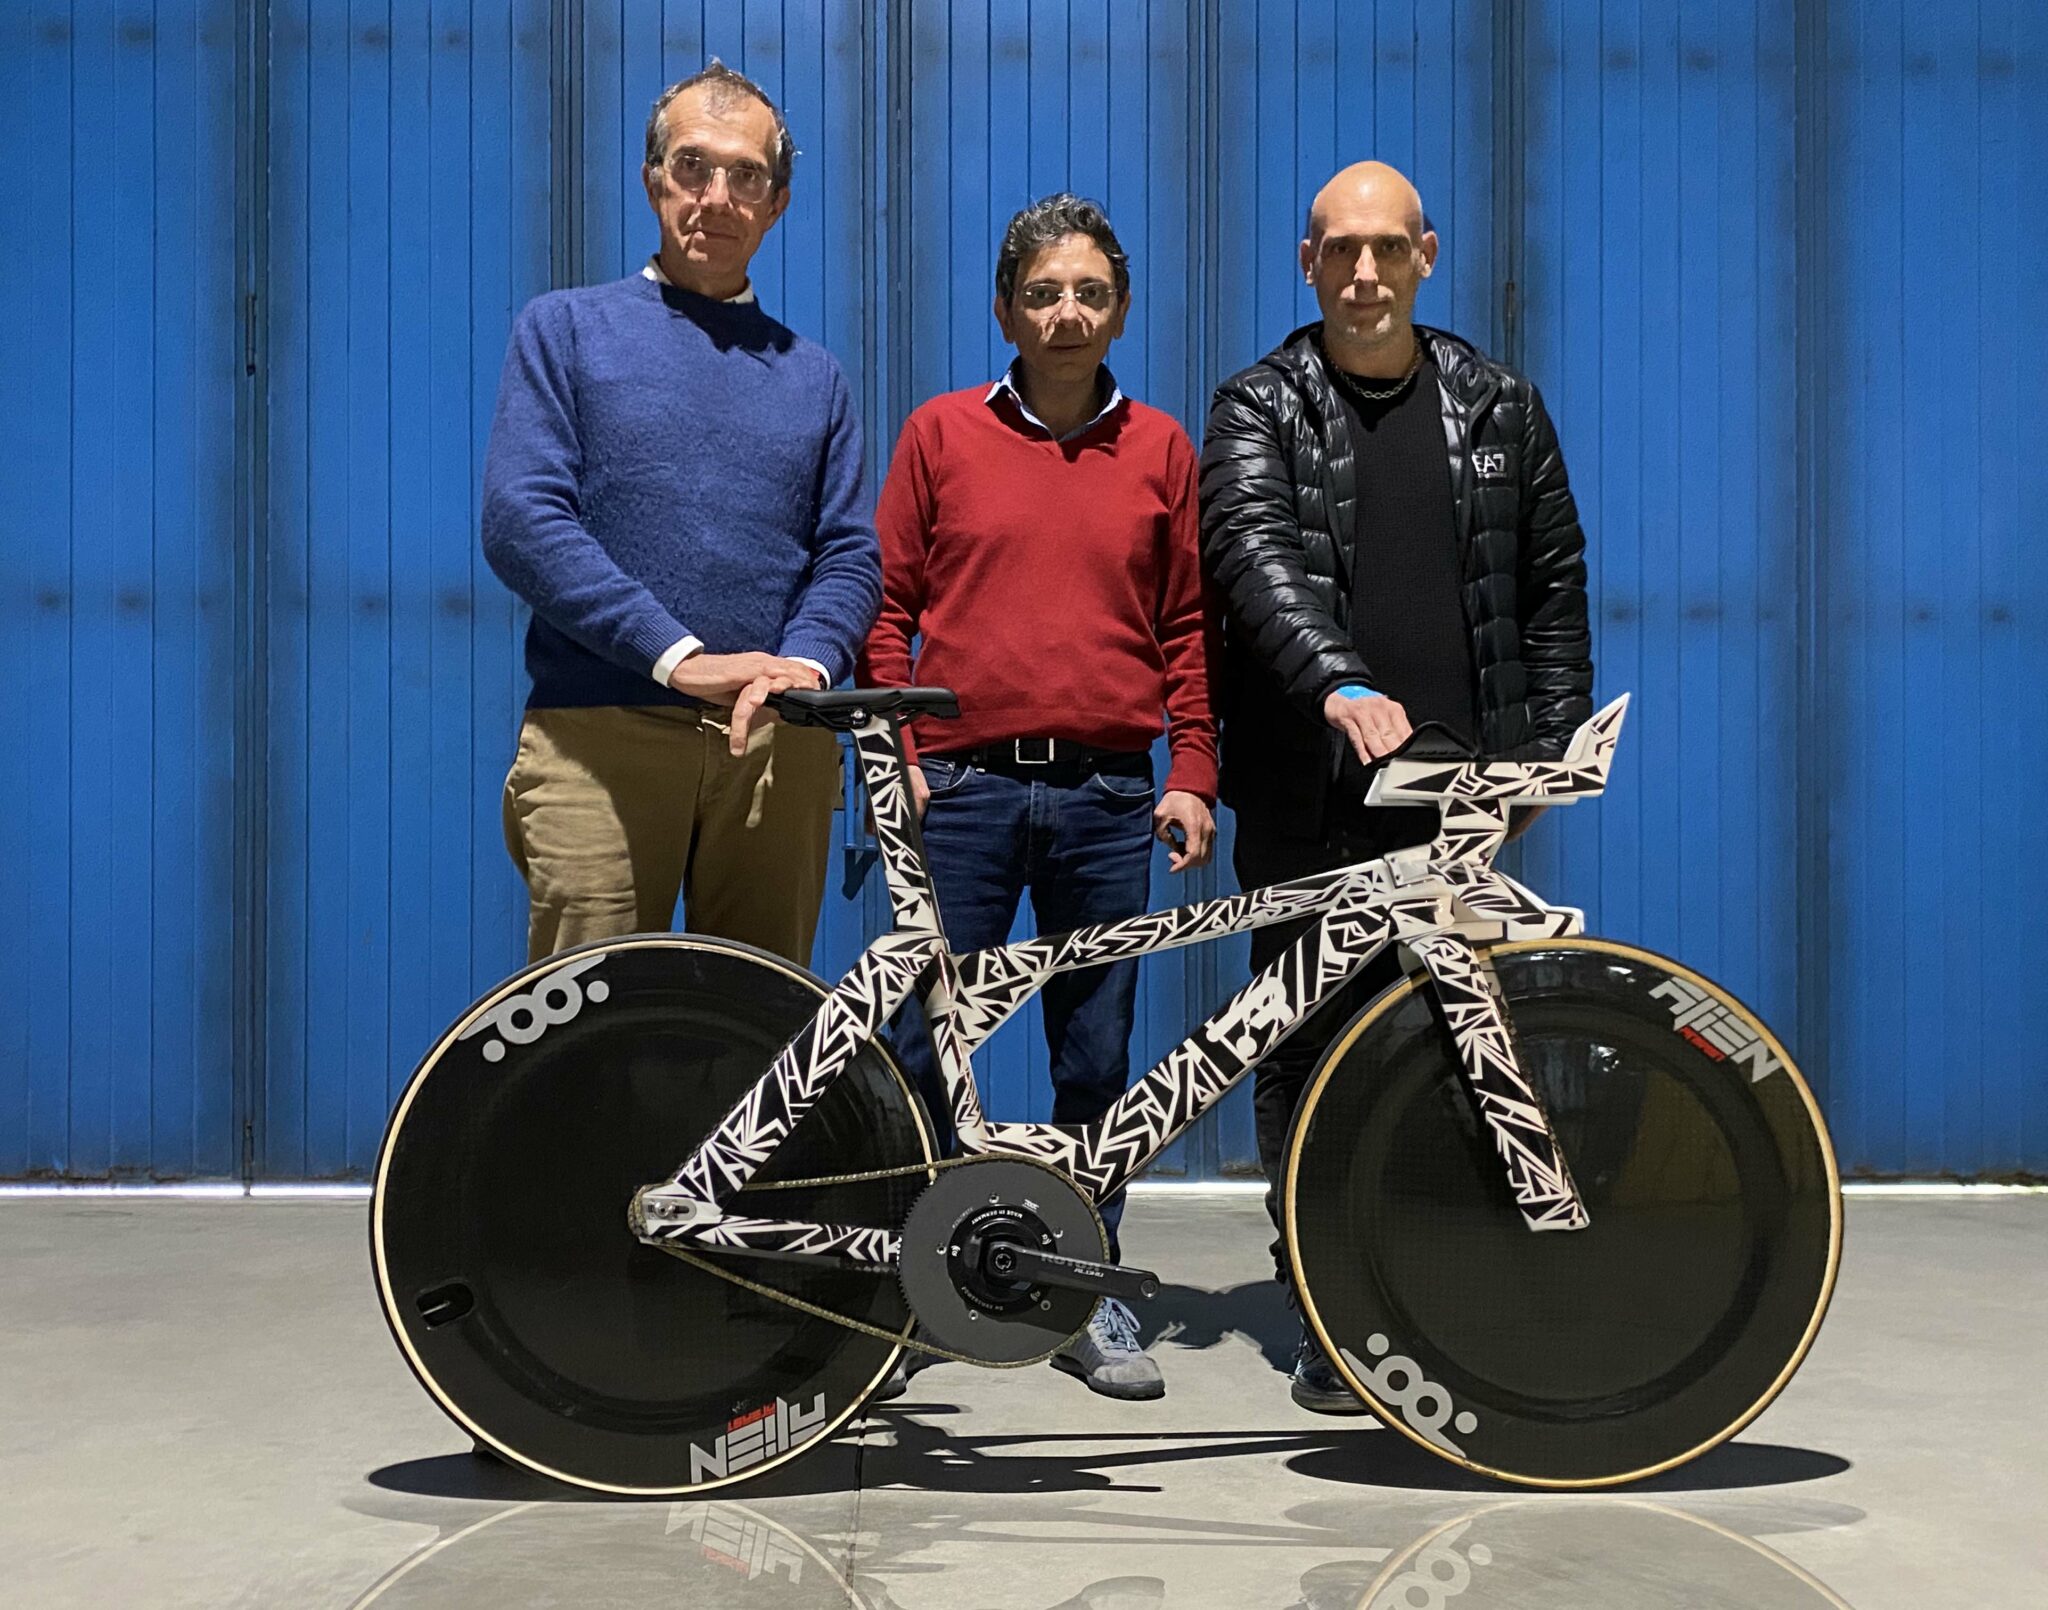 L’Università di Pavia collabora al progetto della bici che sfrutta software adattivi e modelli 3D